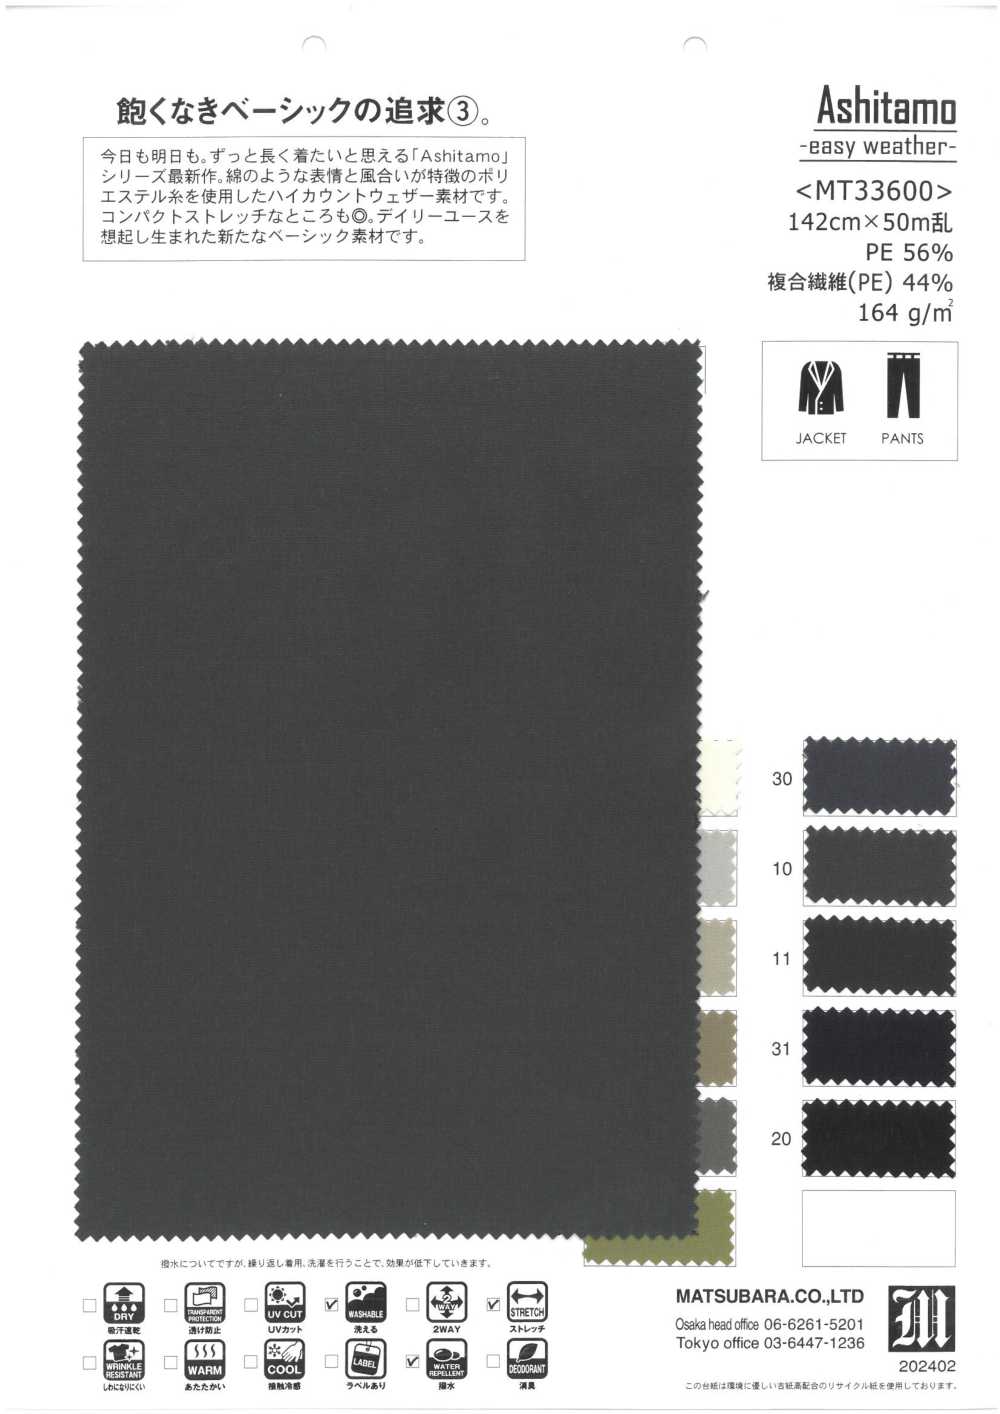 MT33600 Ashitamo -Météo Facile-[Fabrication De Textile] Matsubara